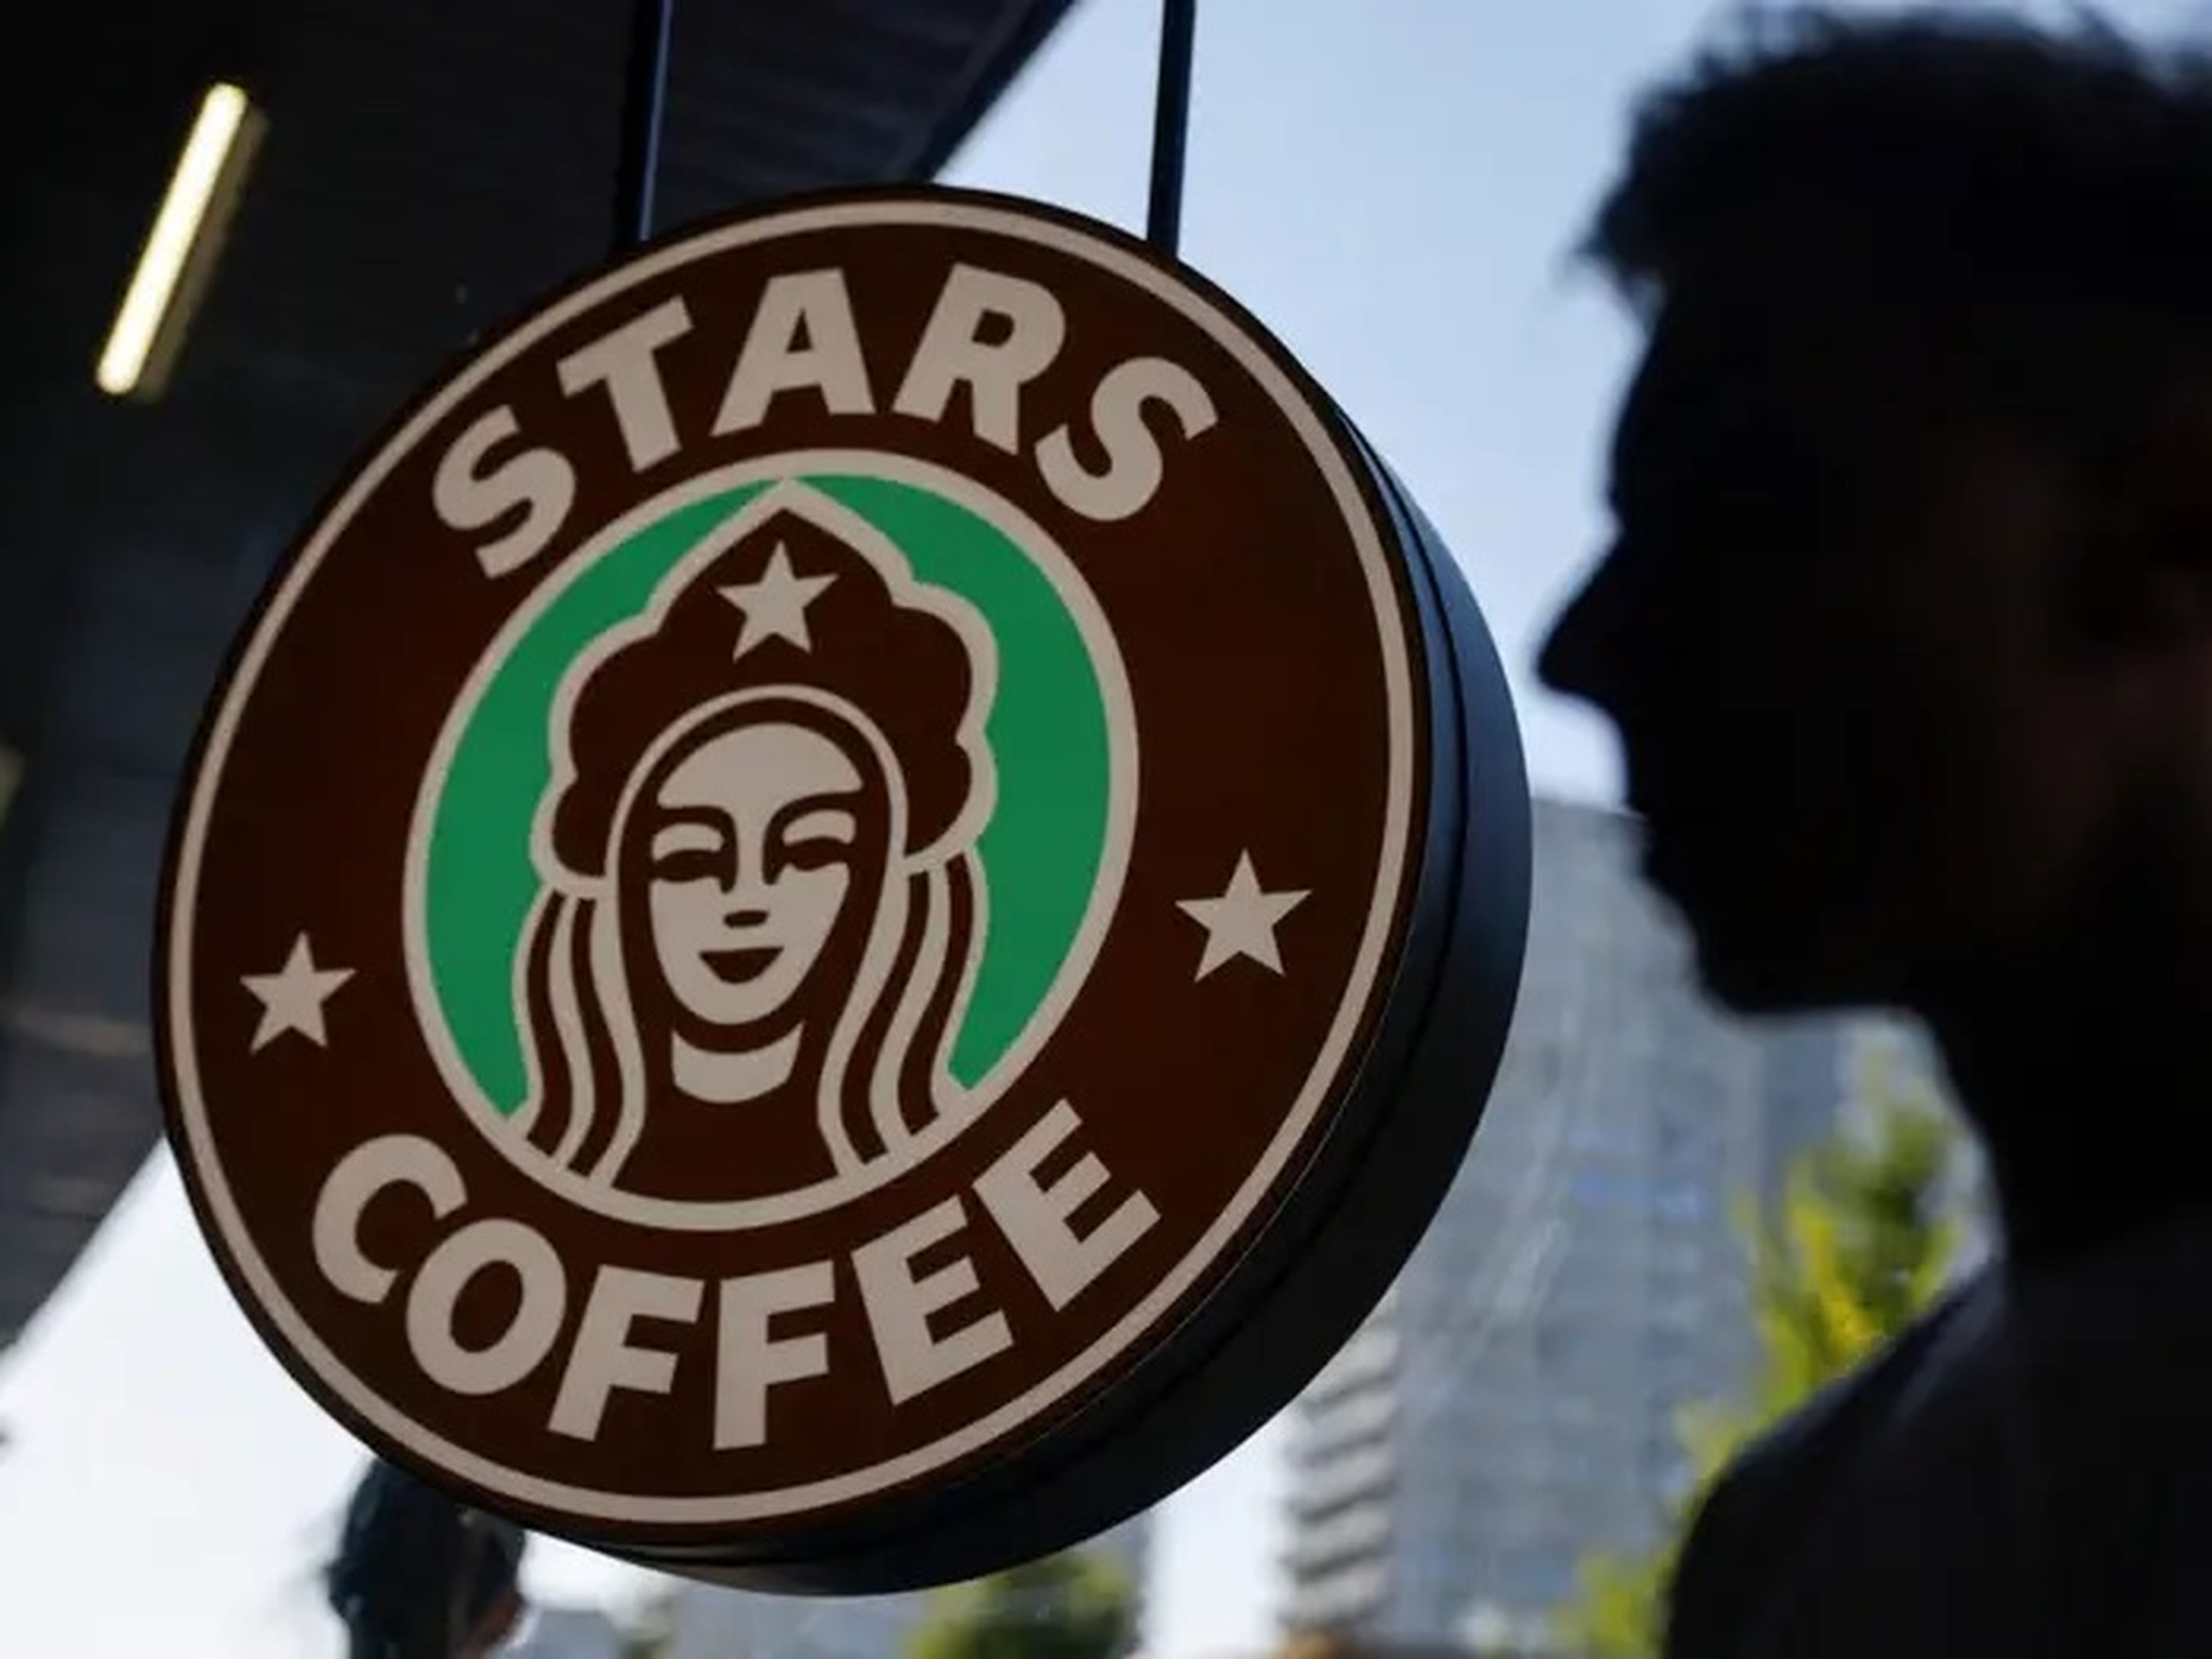 Vista del logotipo en el lanzamiento de la nueva cafetería "Stars Coffee", que se abre tras la salida de Starbucks del mercado ruso, en Moscú, Rusia, el 18 de agosto 2022.